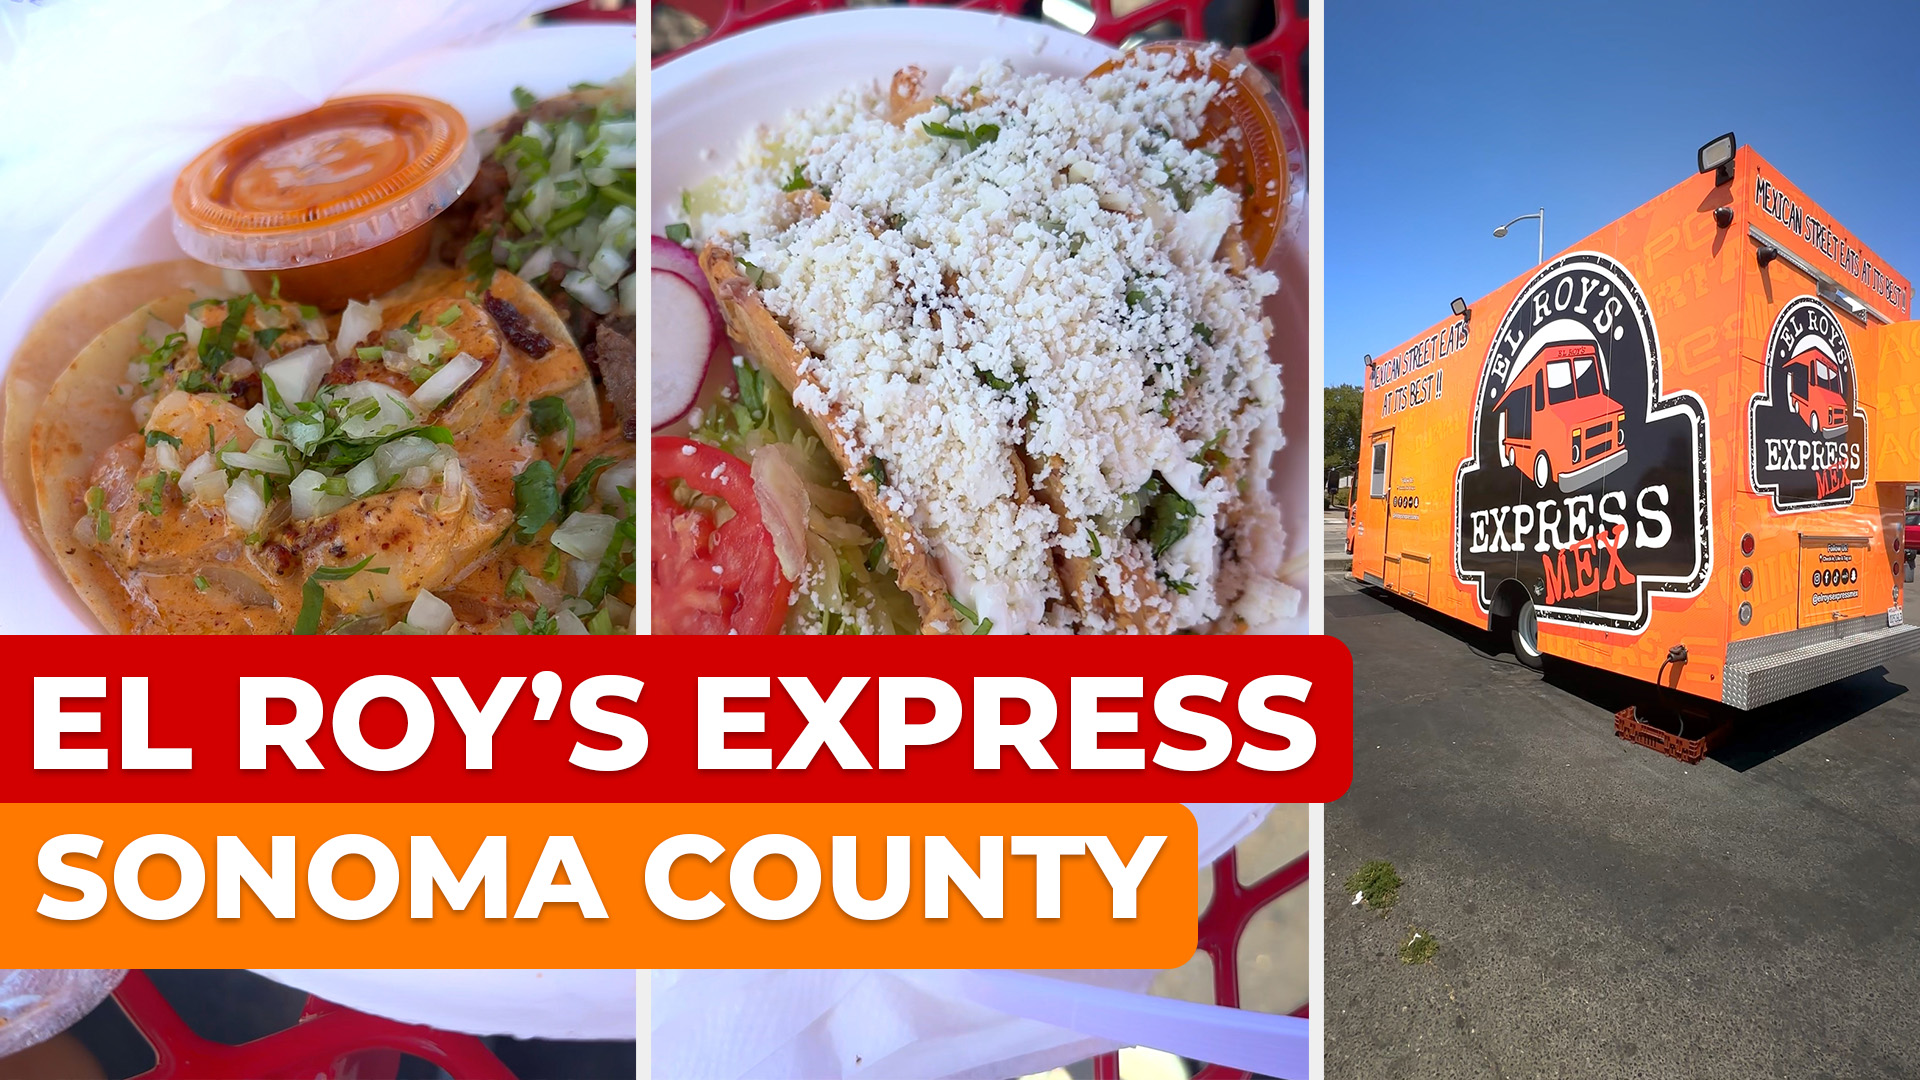 El Roy's Express Sonoma County